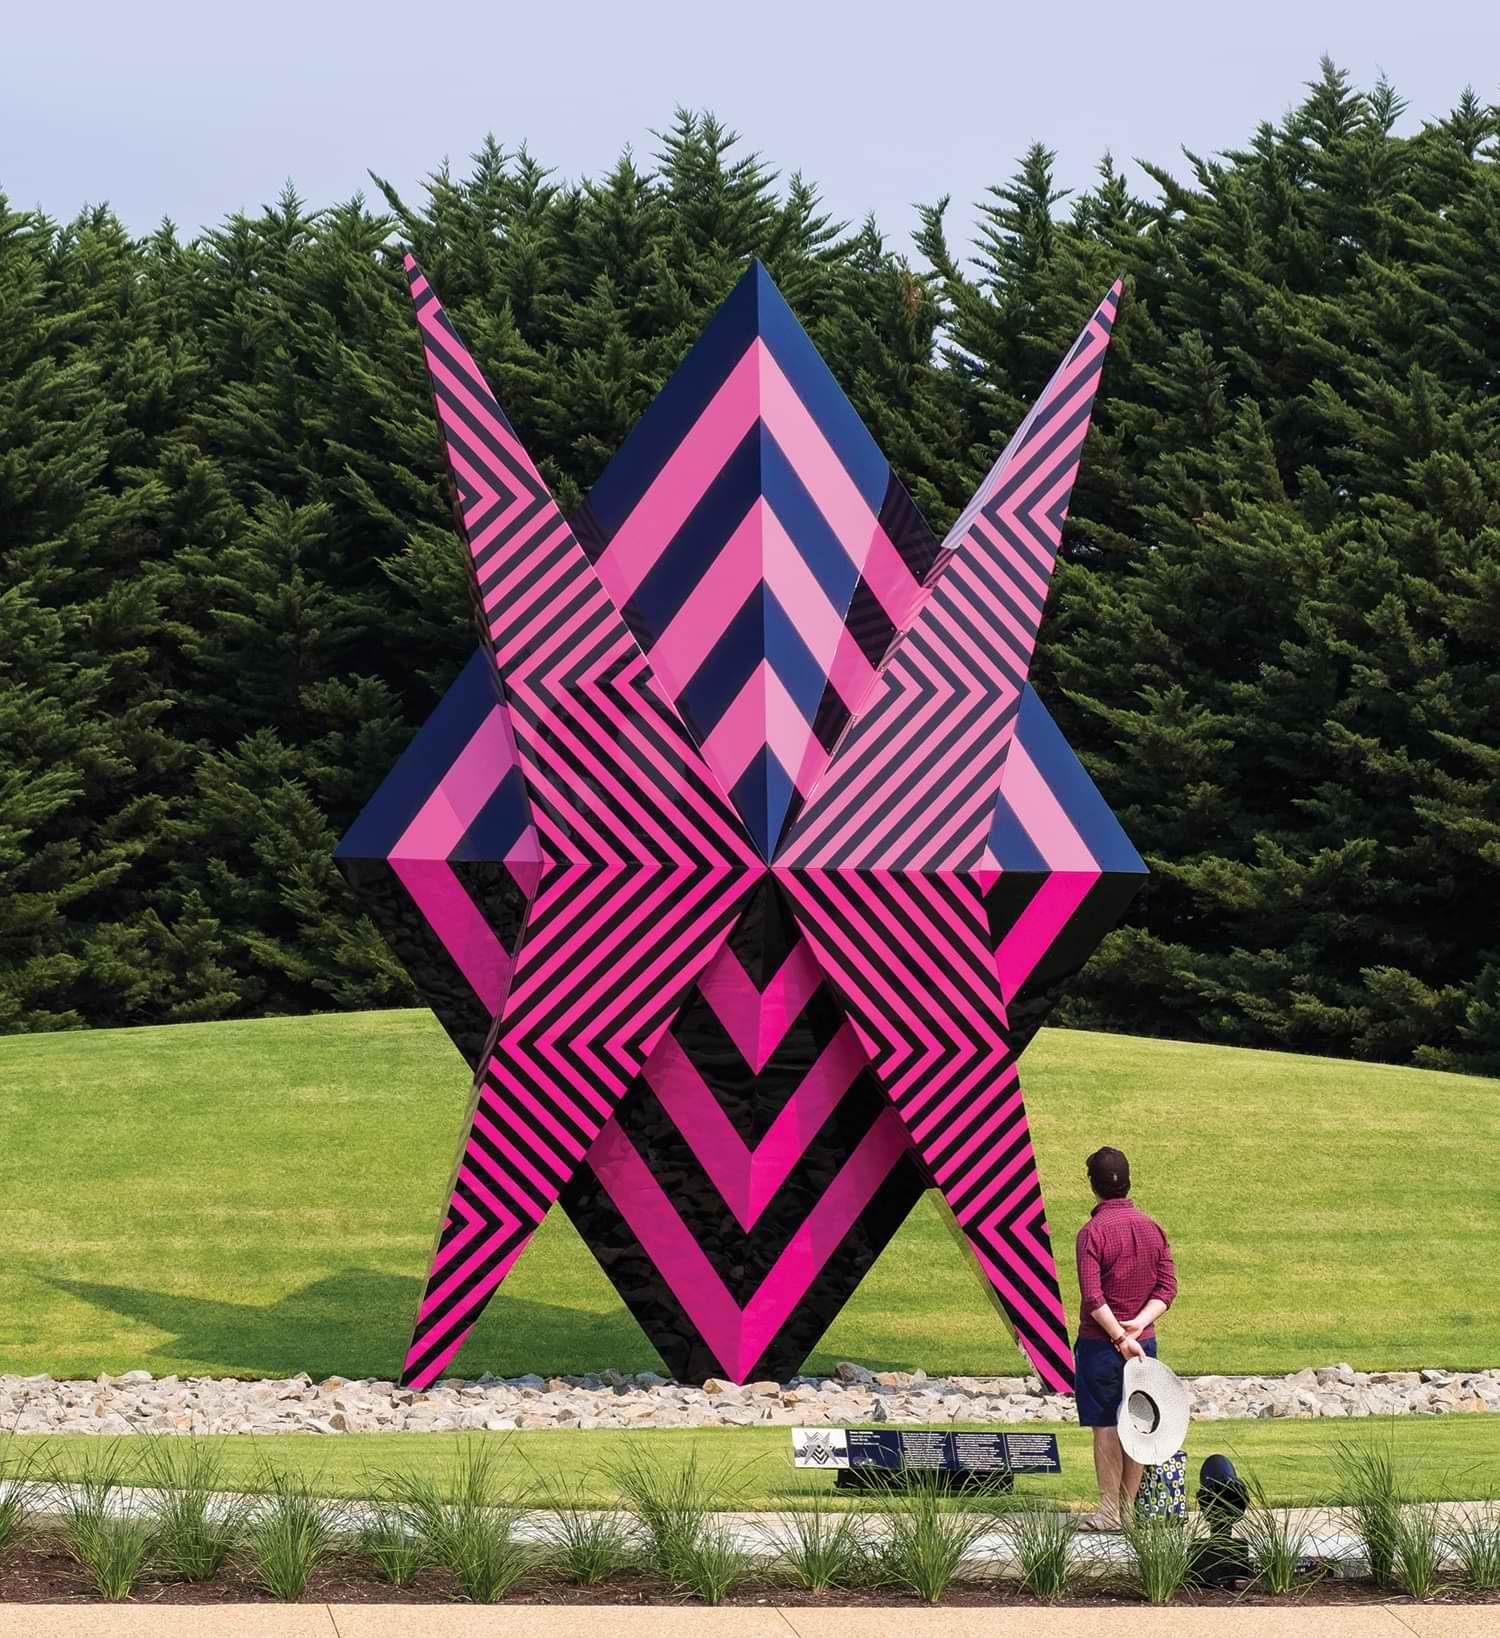 a large geometric sculpture by Reko Rennie